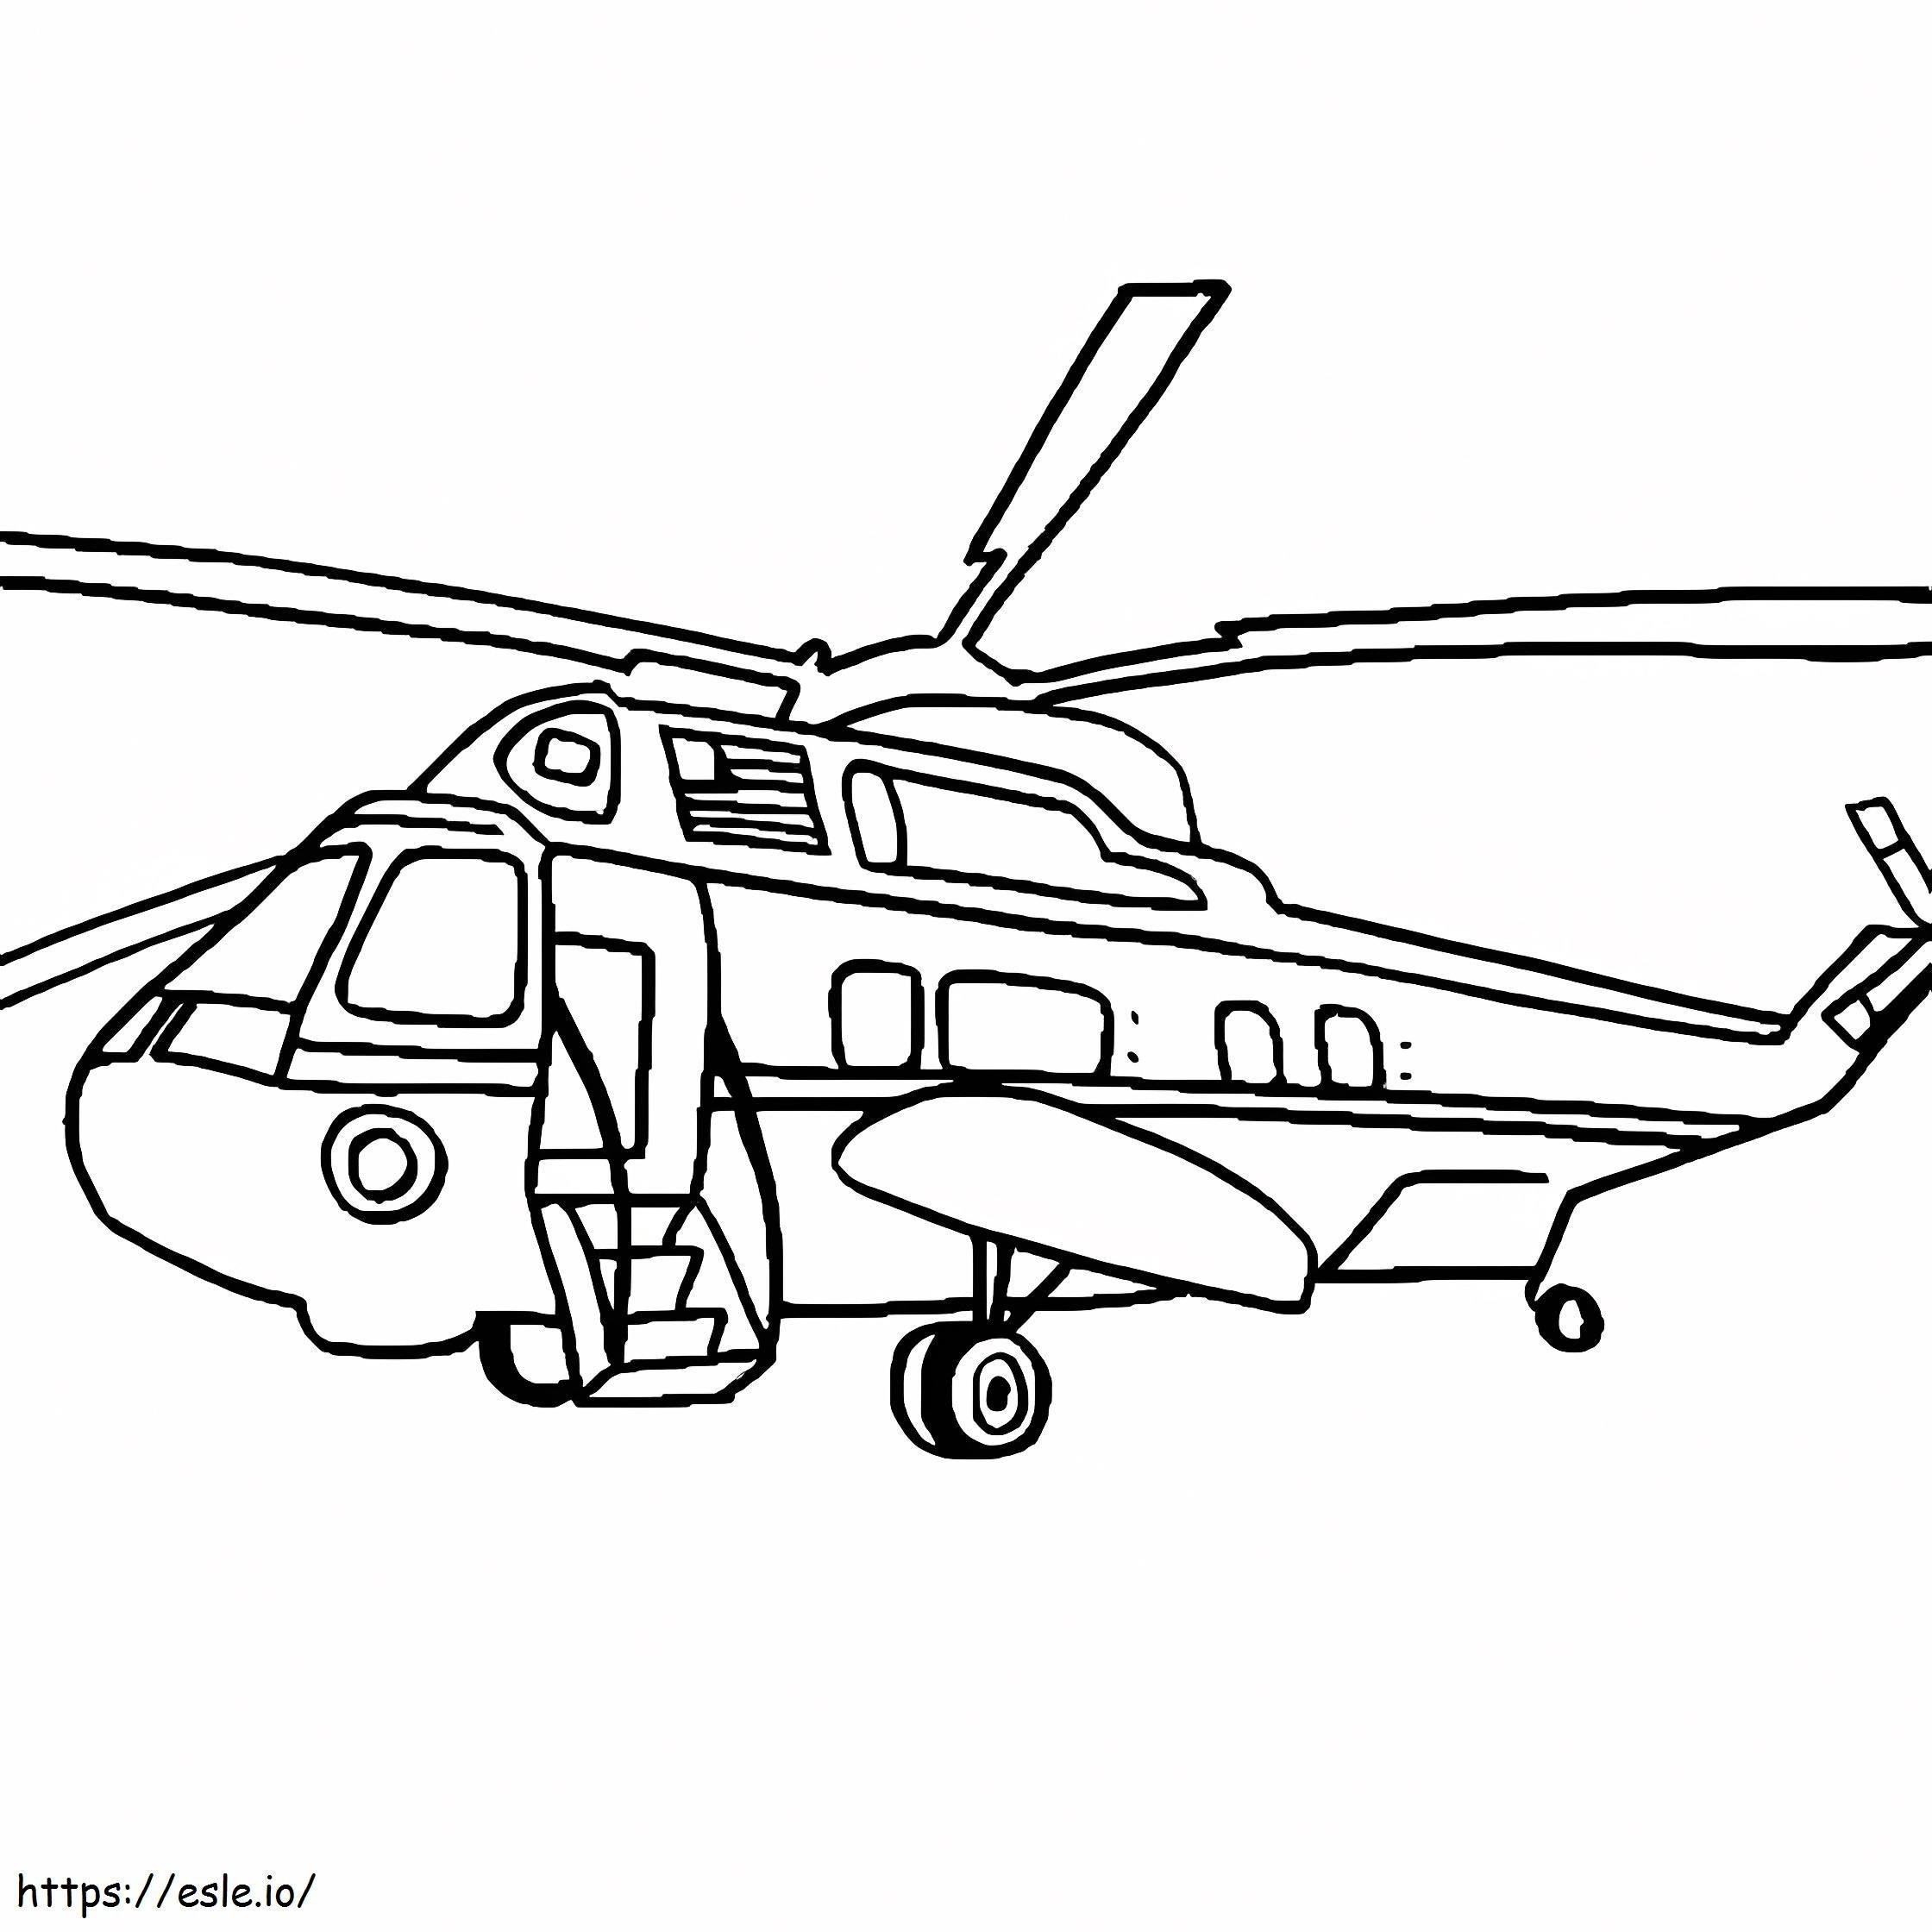 Coloriage Hélicoptère Blackhawk à imprimer dessin